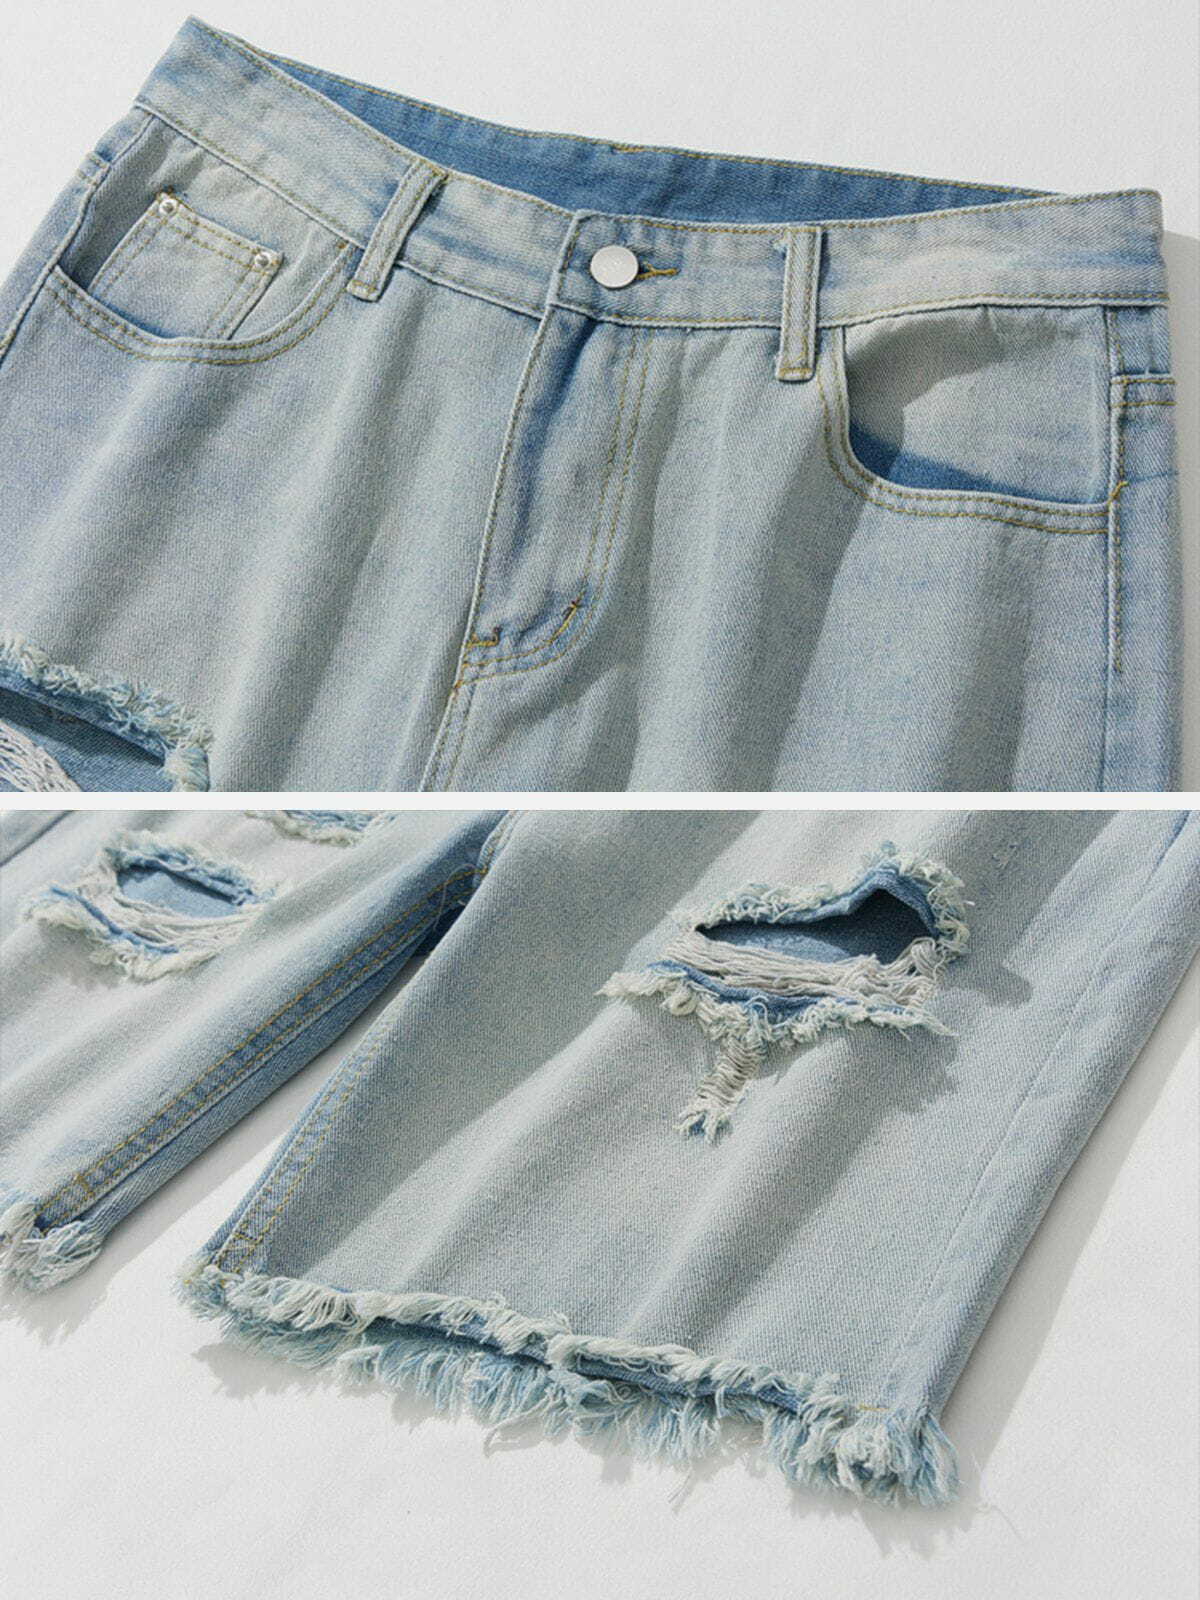 vintage washed denim shorts retro & urban style 8125